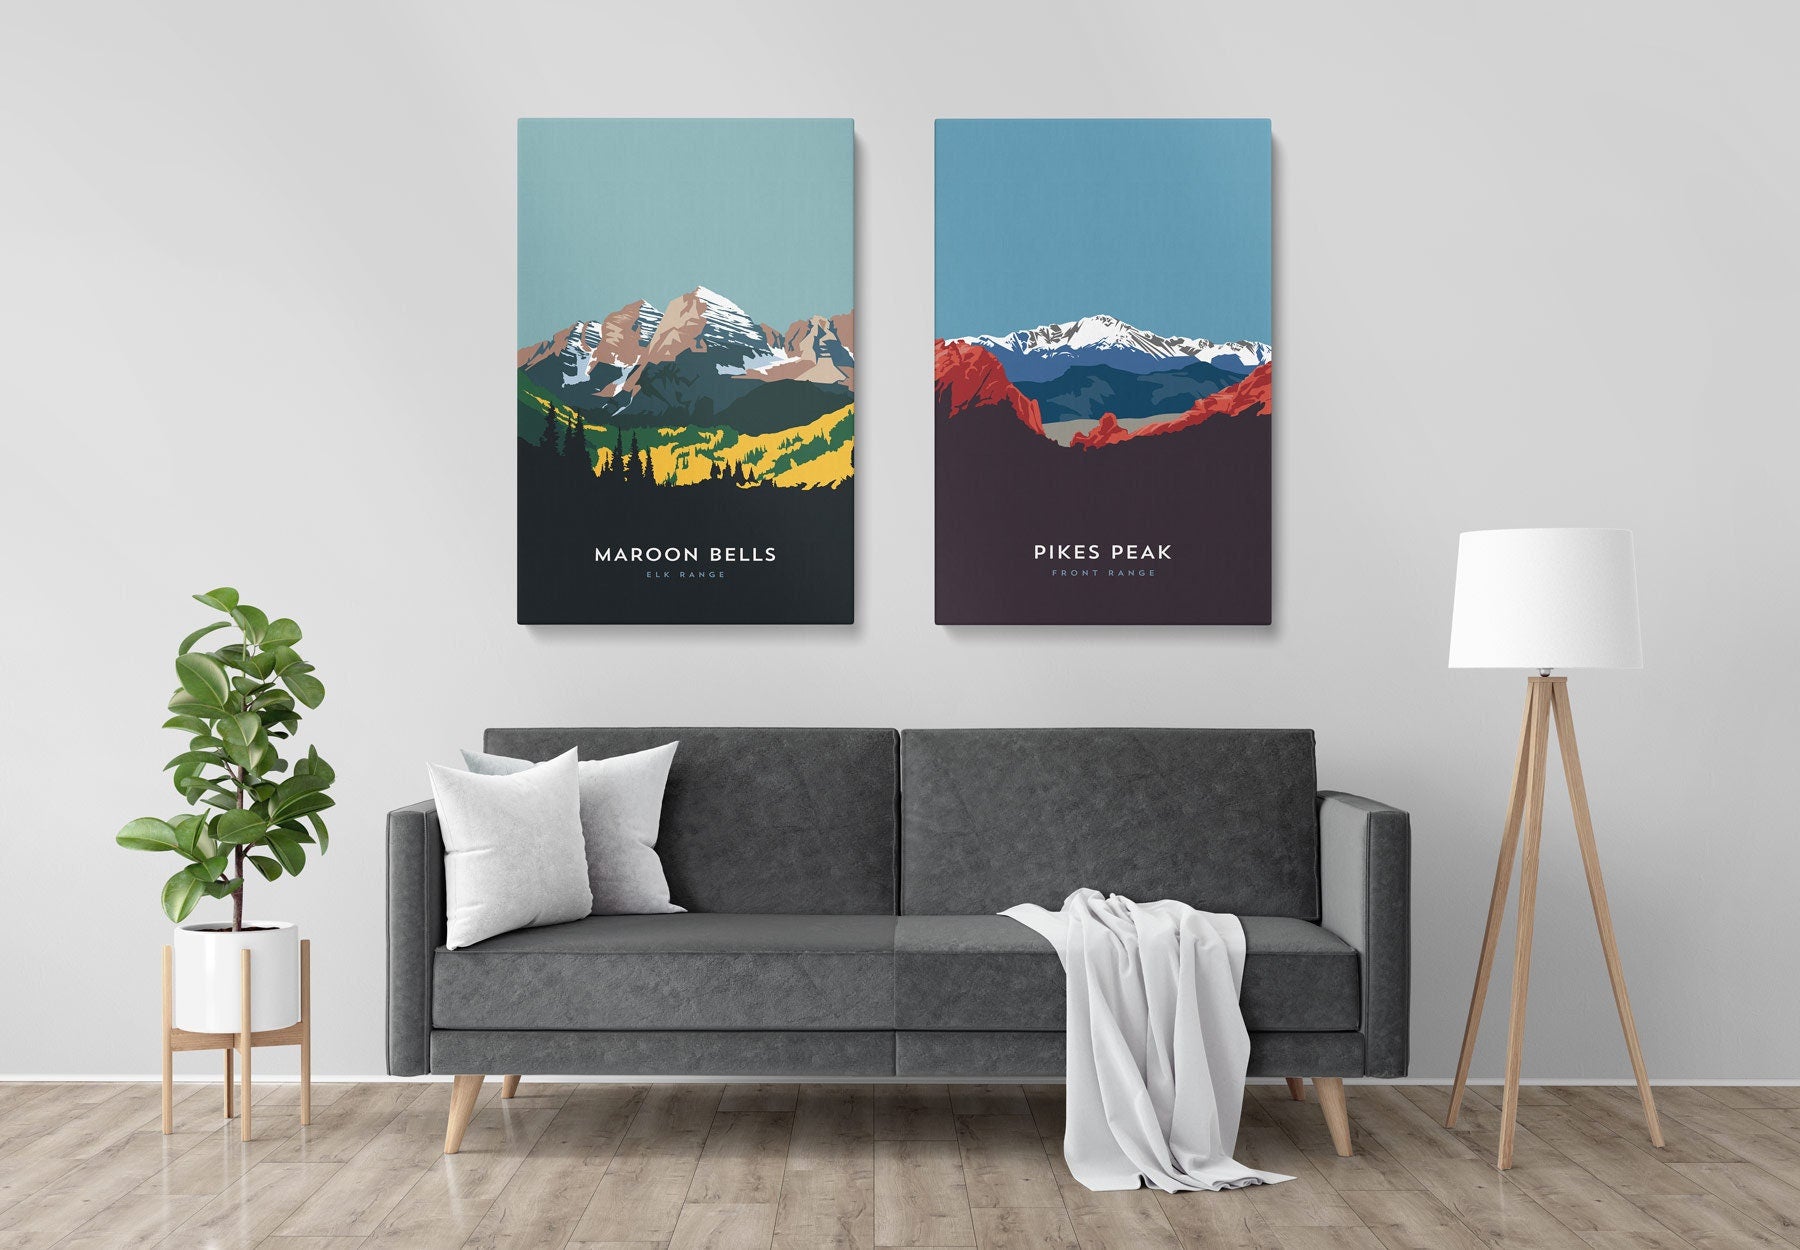 El Diente Peak Colorado 14er Canvas Print